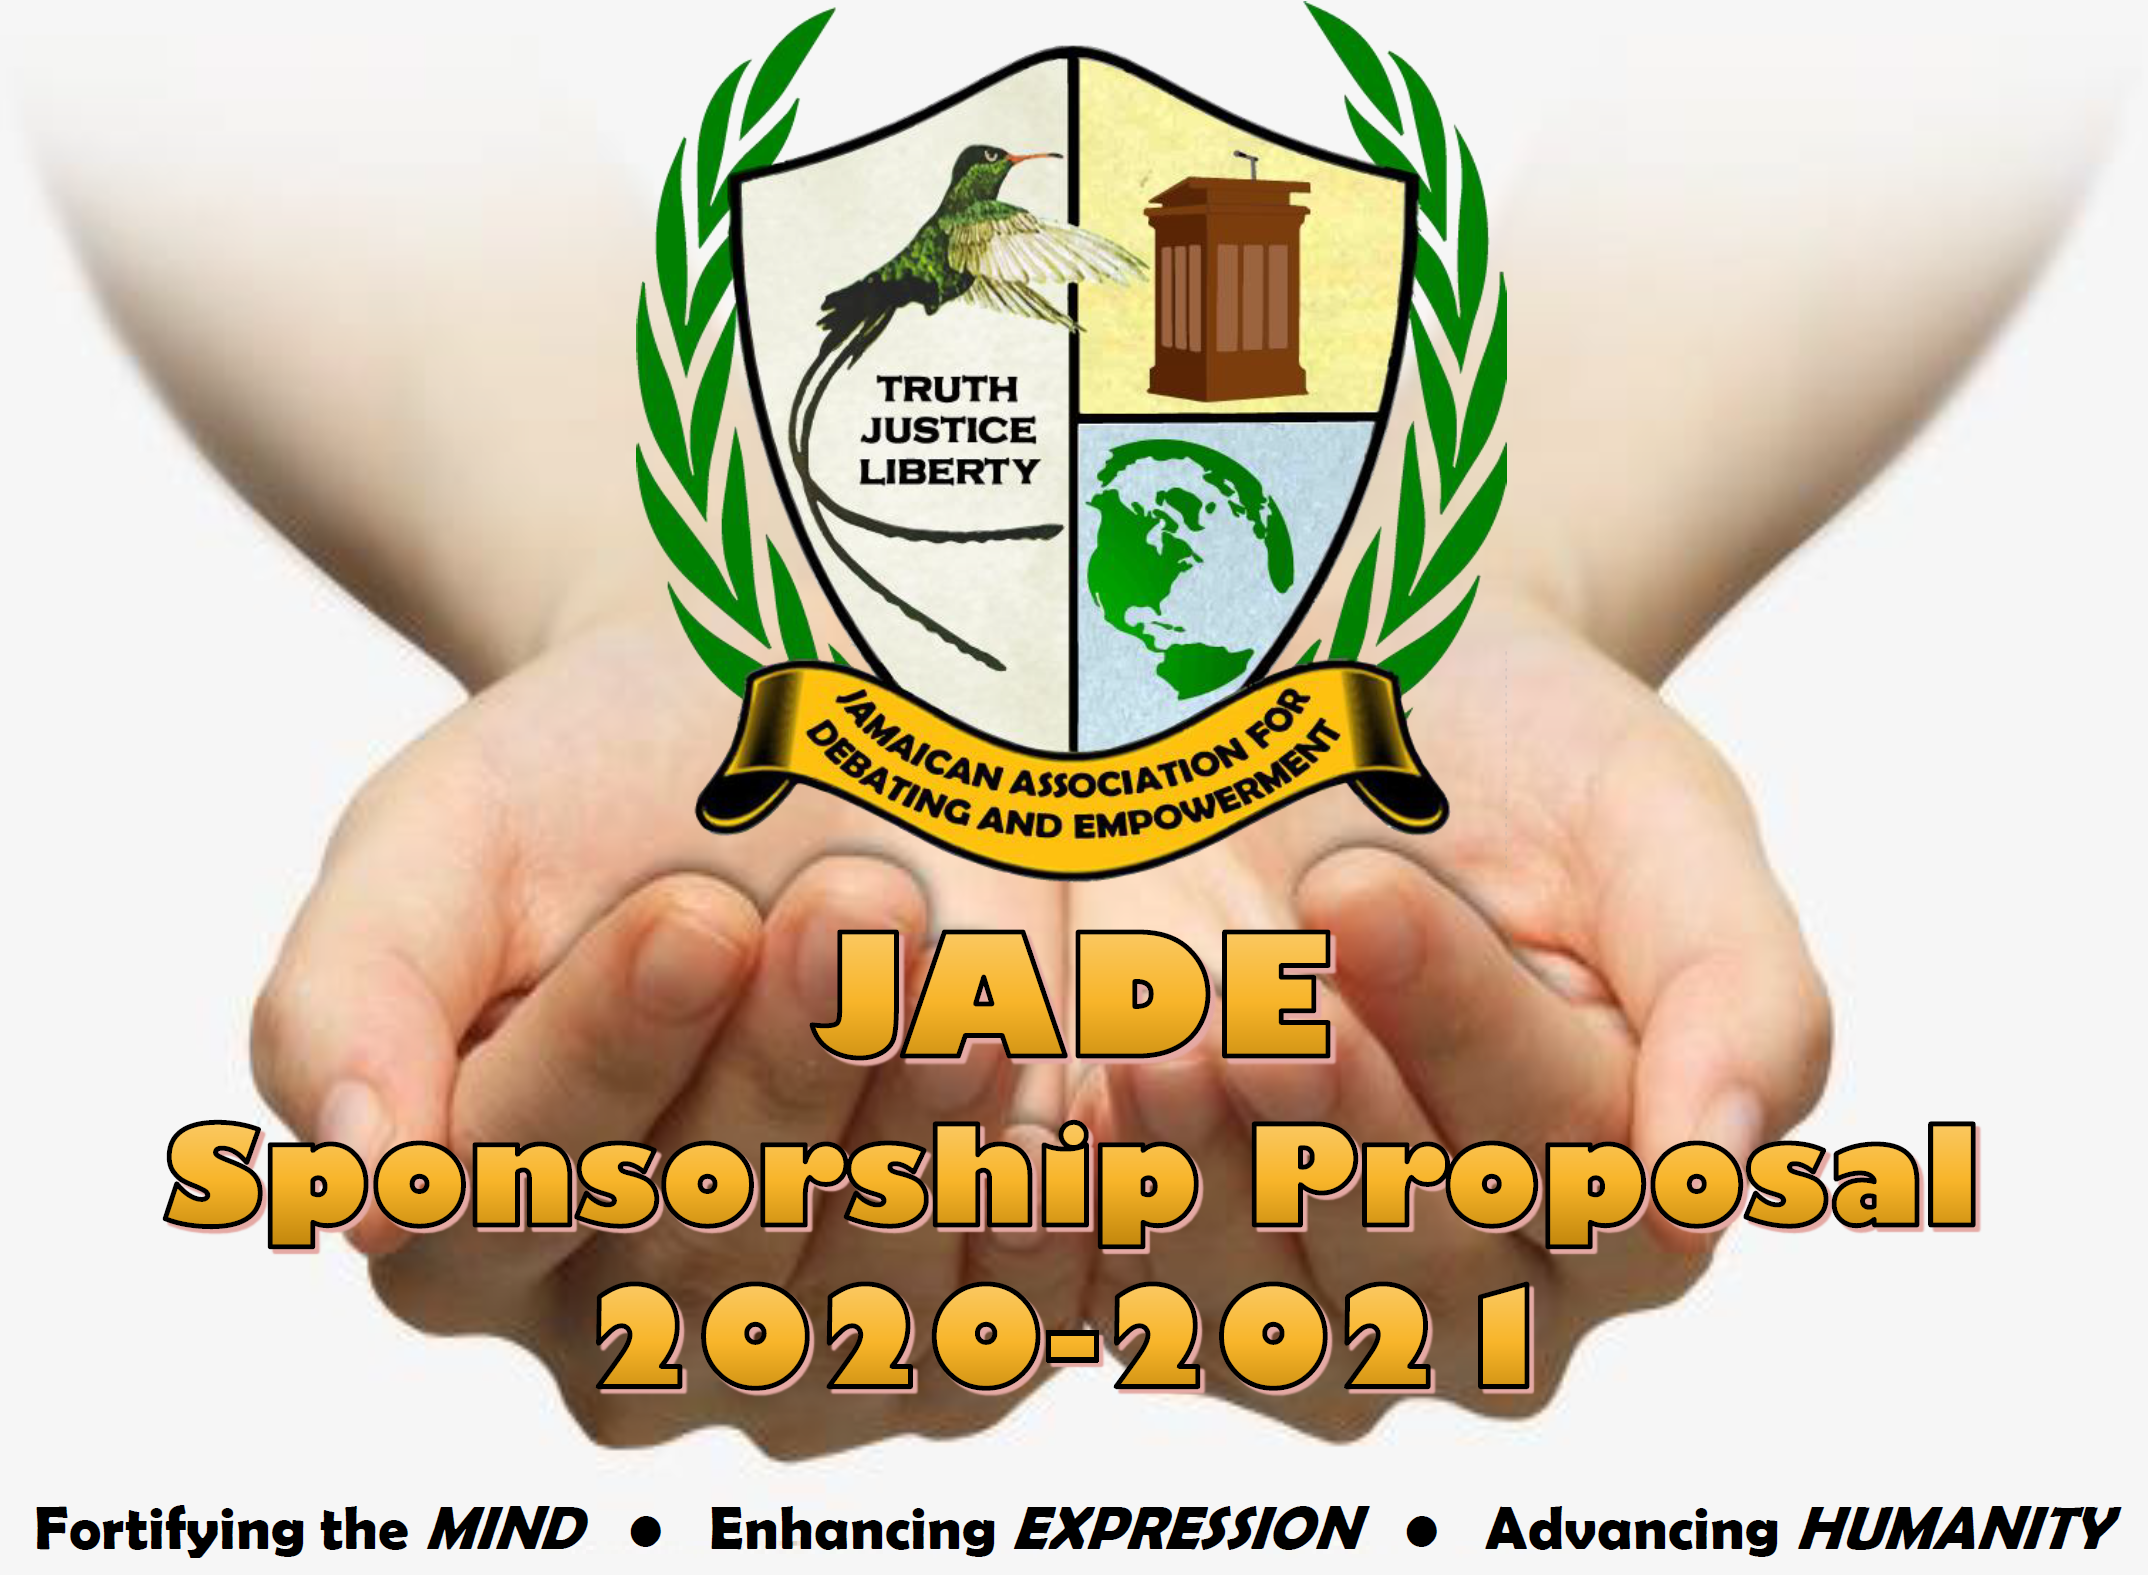 JADE Partnership Proposal